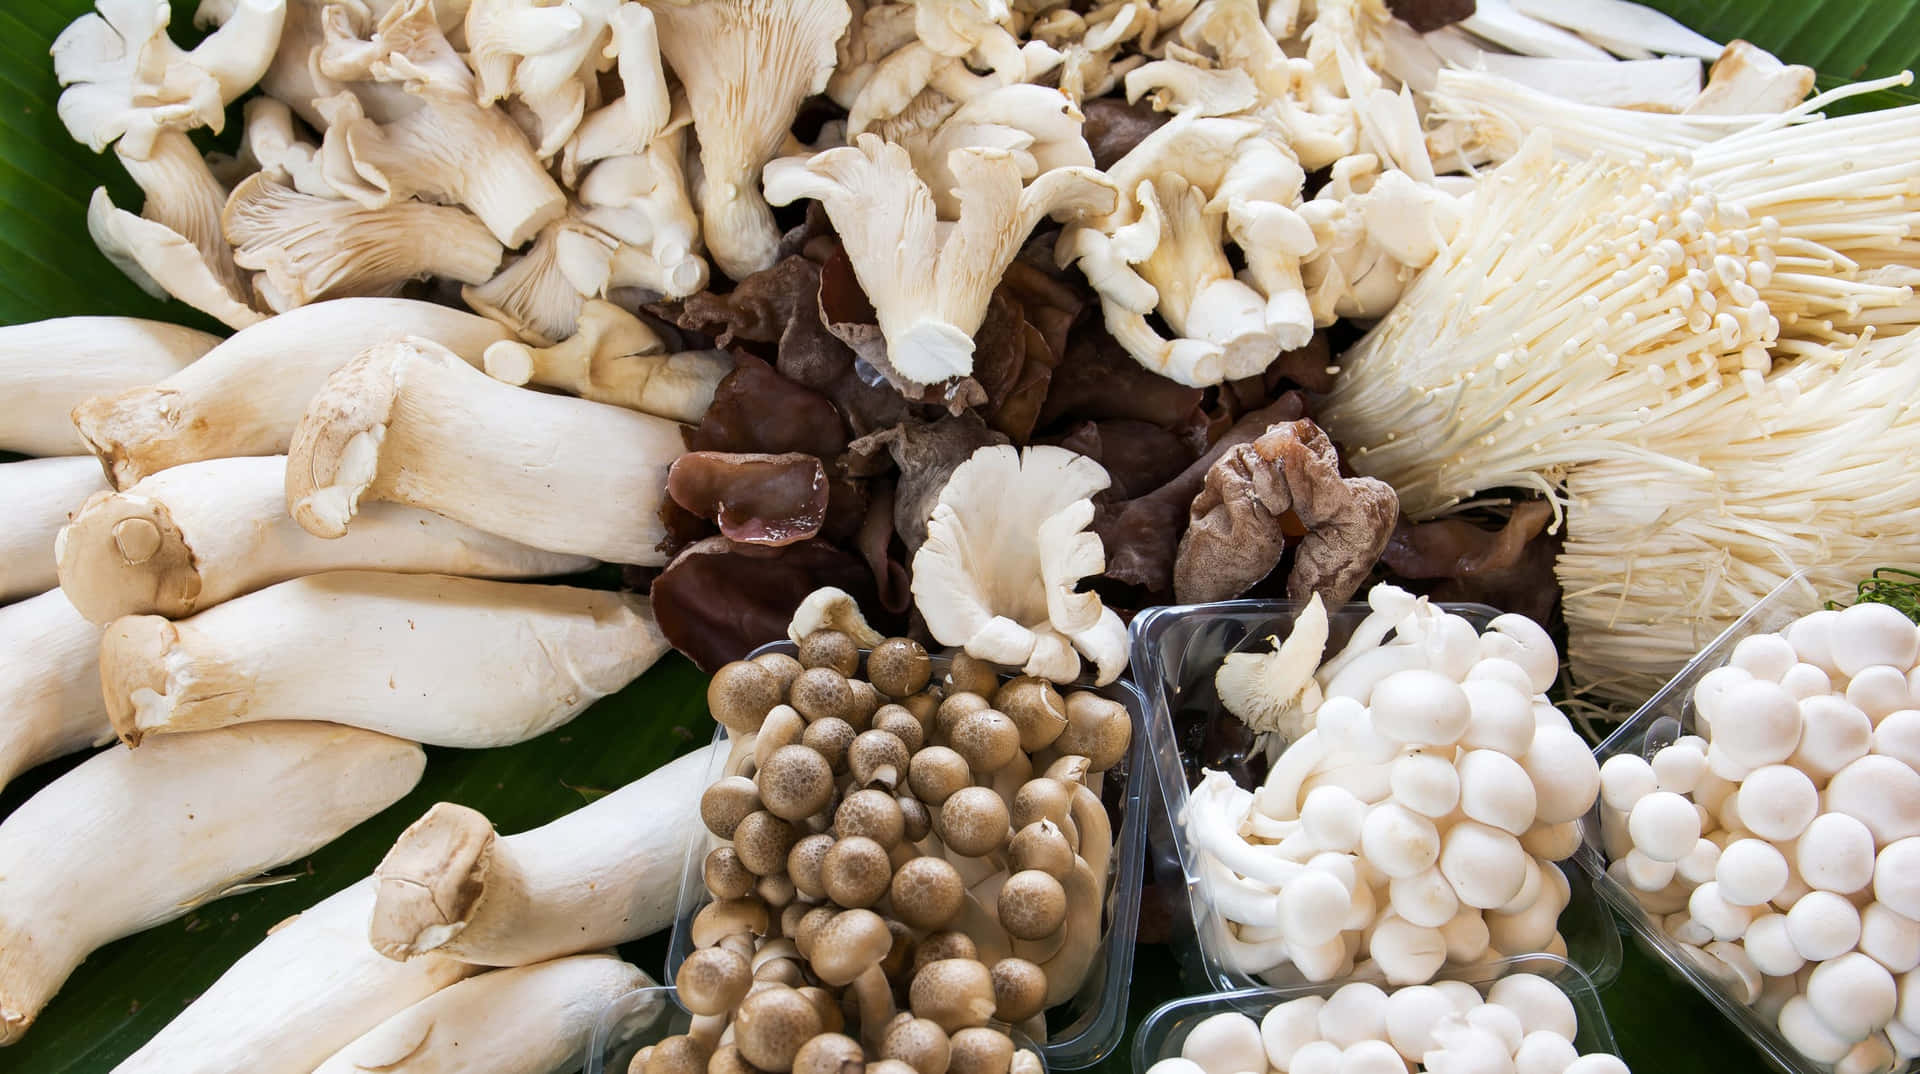 Billeder af forskellige typer af svampe, der fliser over hele tapetet.